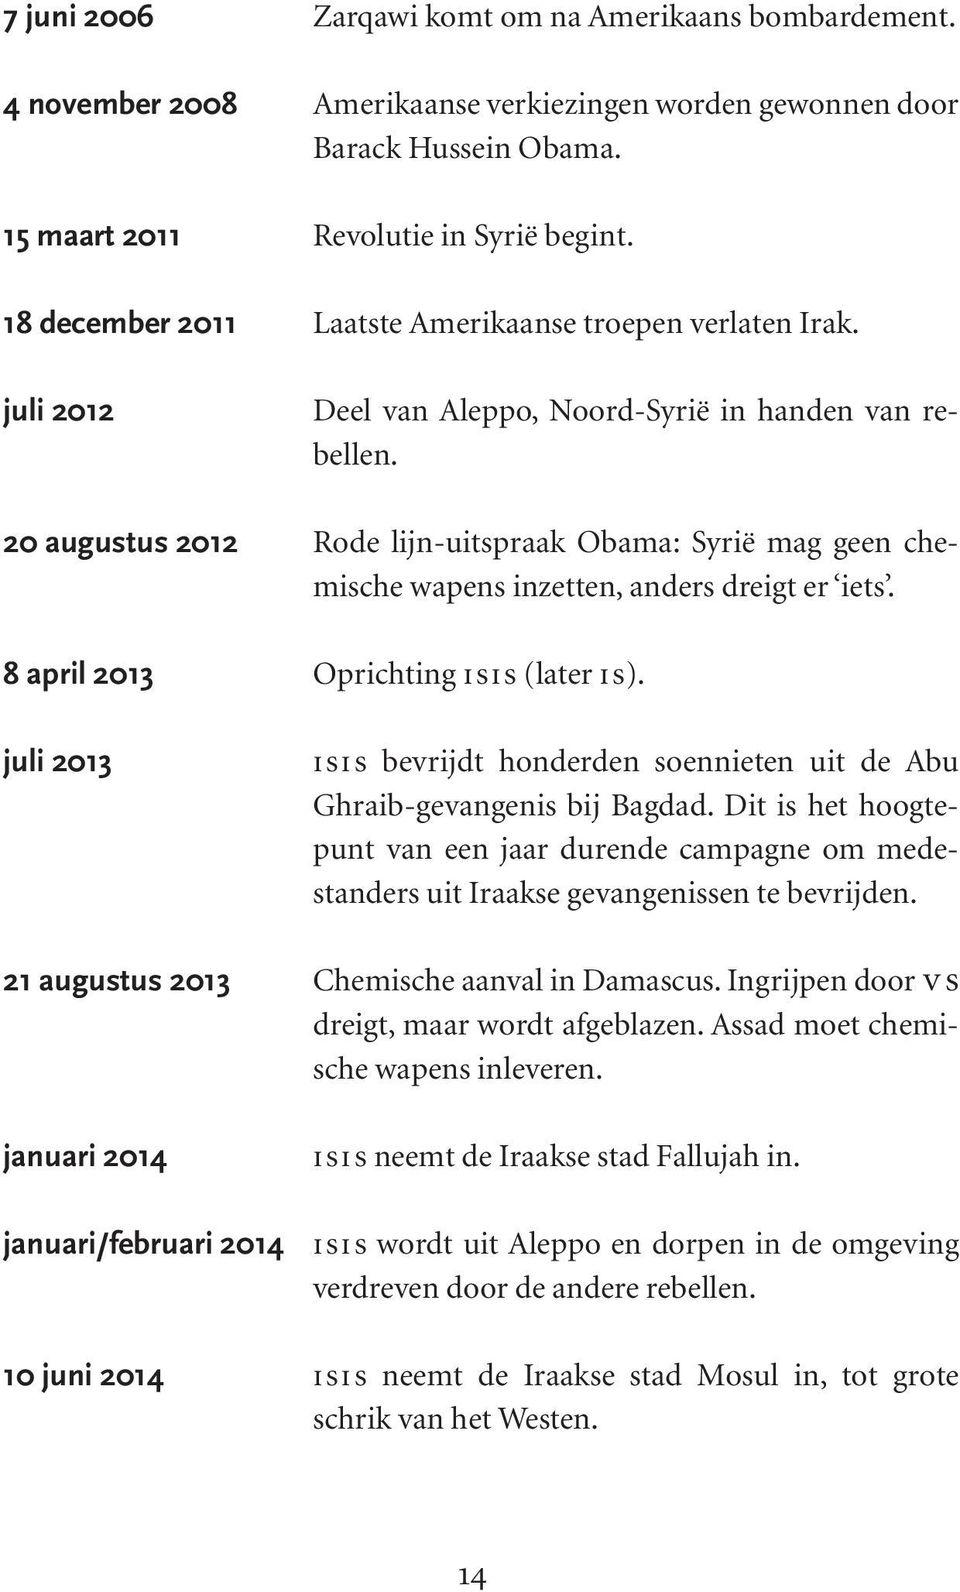 20 augustus 2012 Rode lijn-uitspraak Obama: Syrië mag geen chemische wapens inzetten, anders dreigt er iets. 8 april 2013 Oprichting isis (later is).